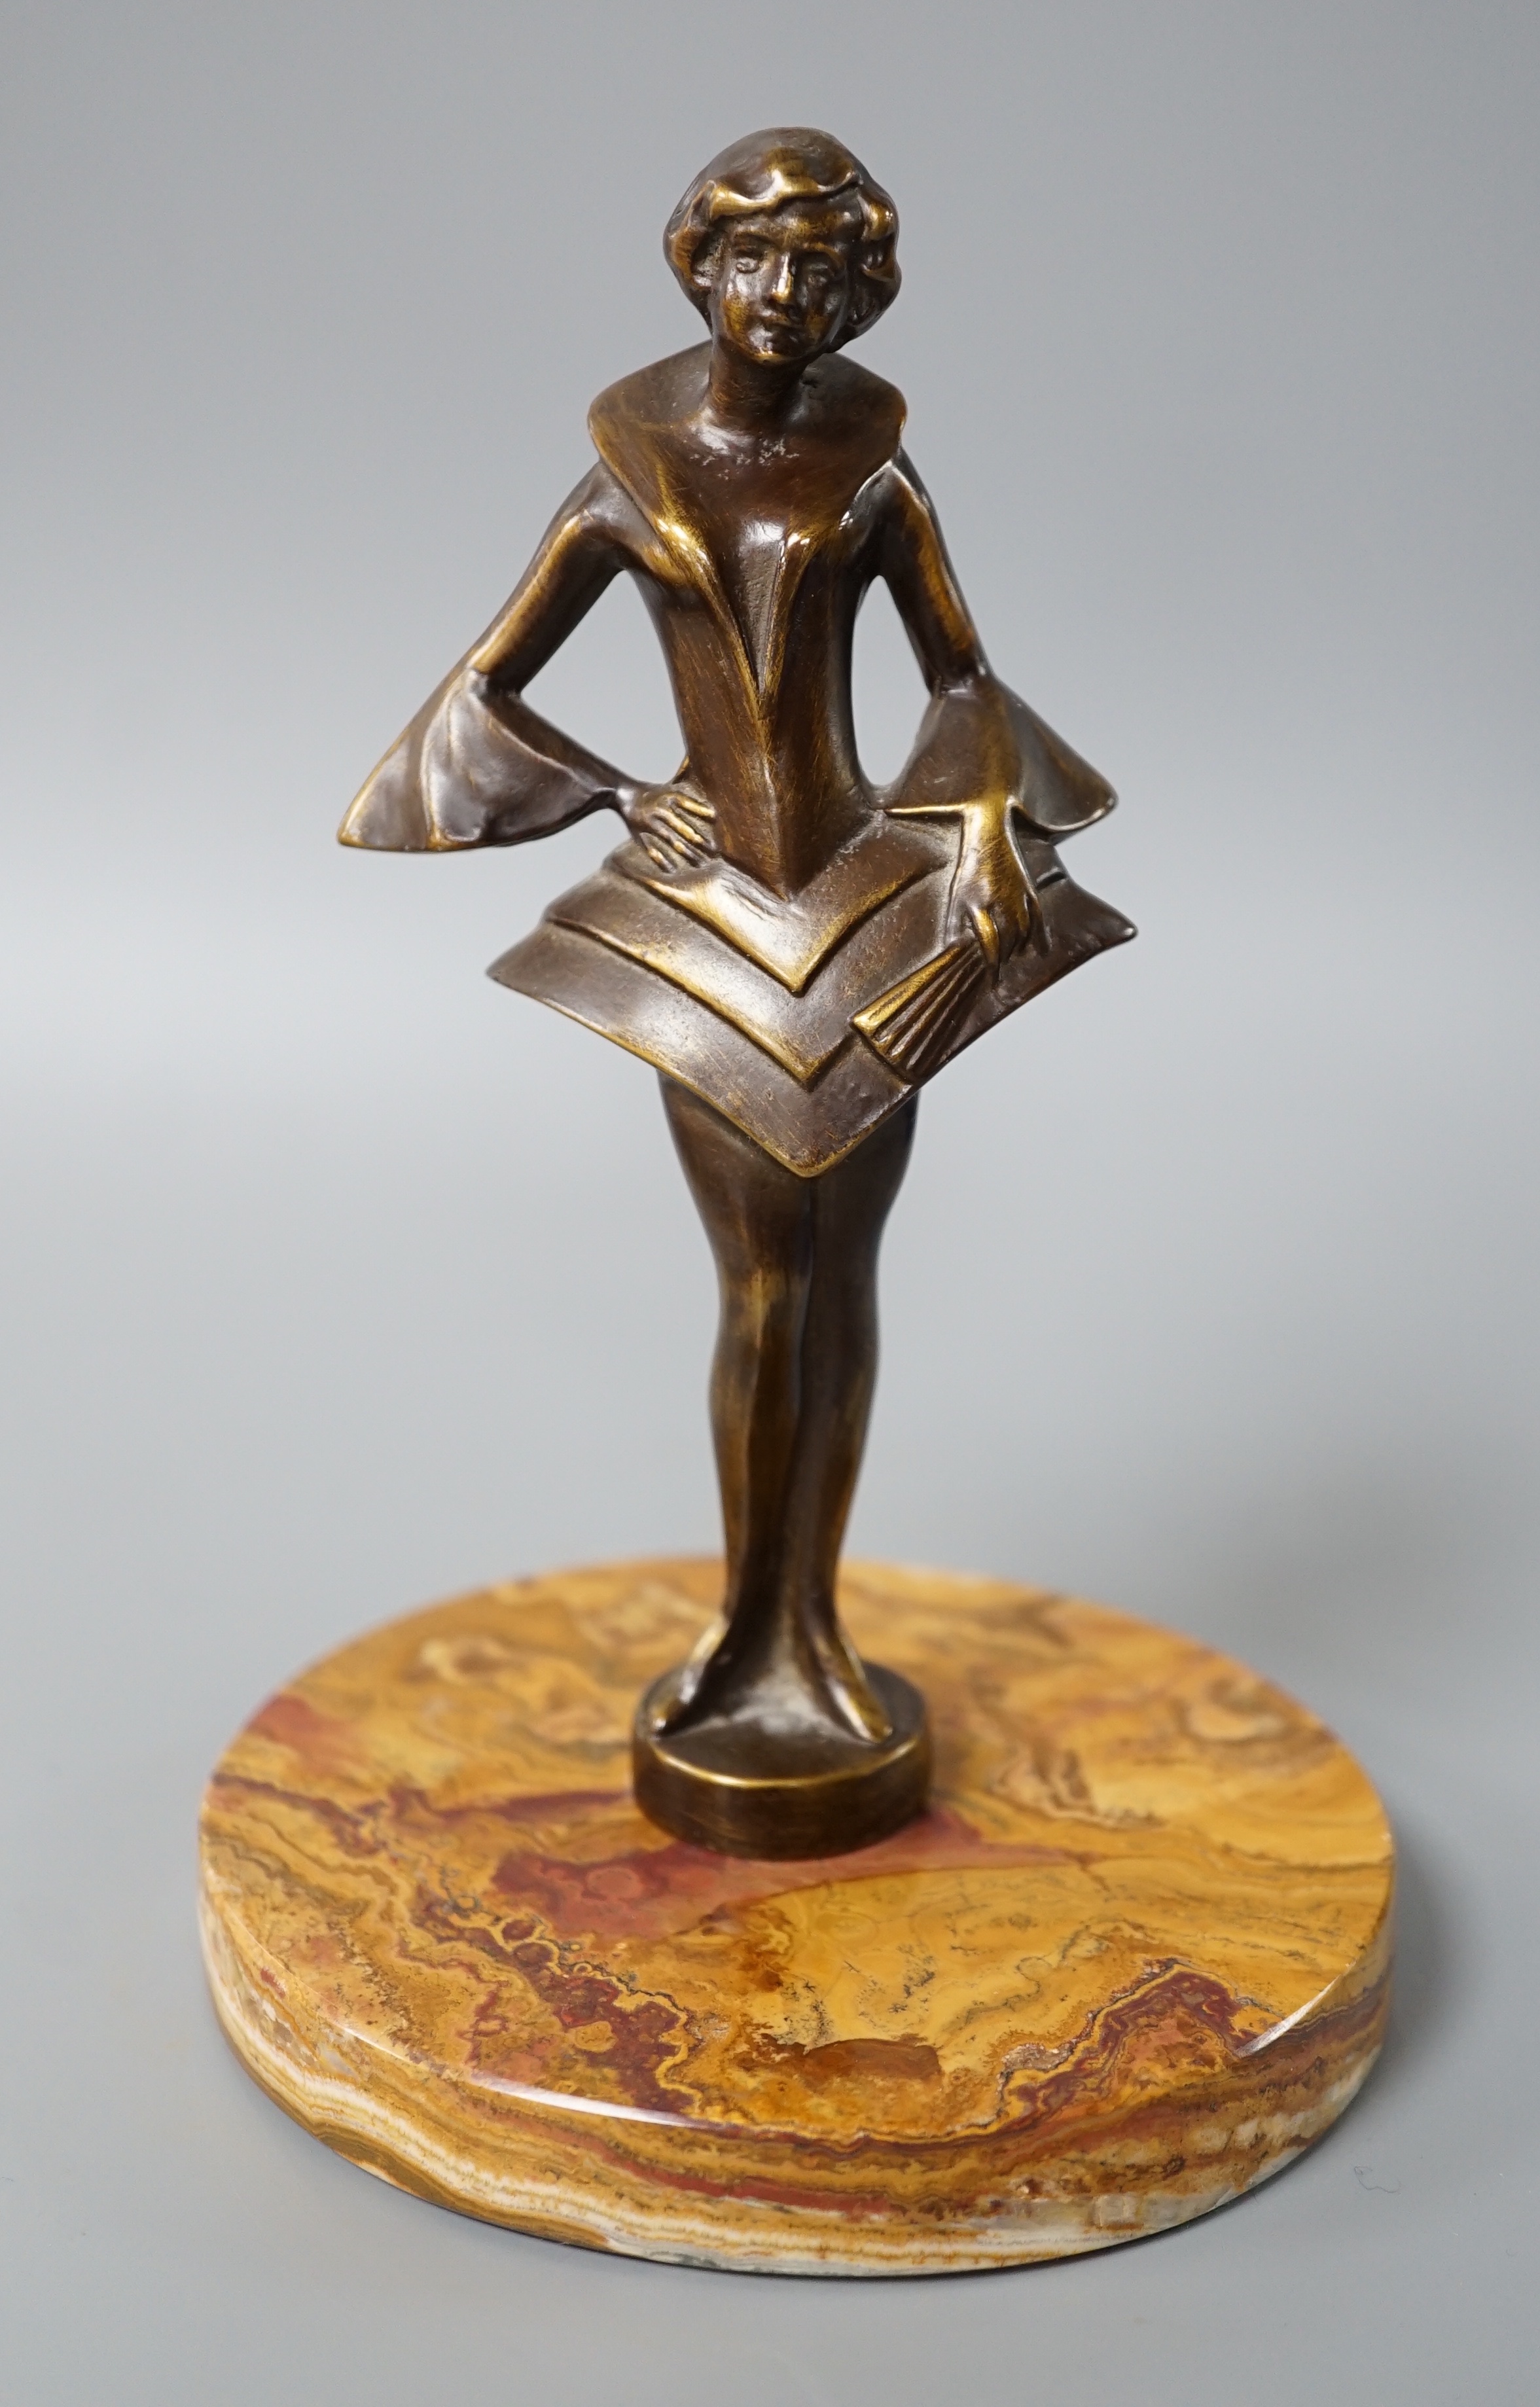 An Art Deco style bronze figure of a woman,17 cms high.